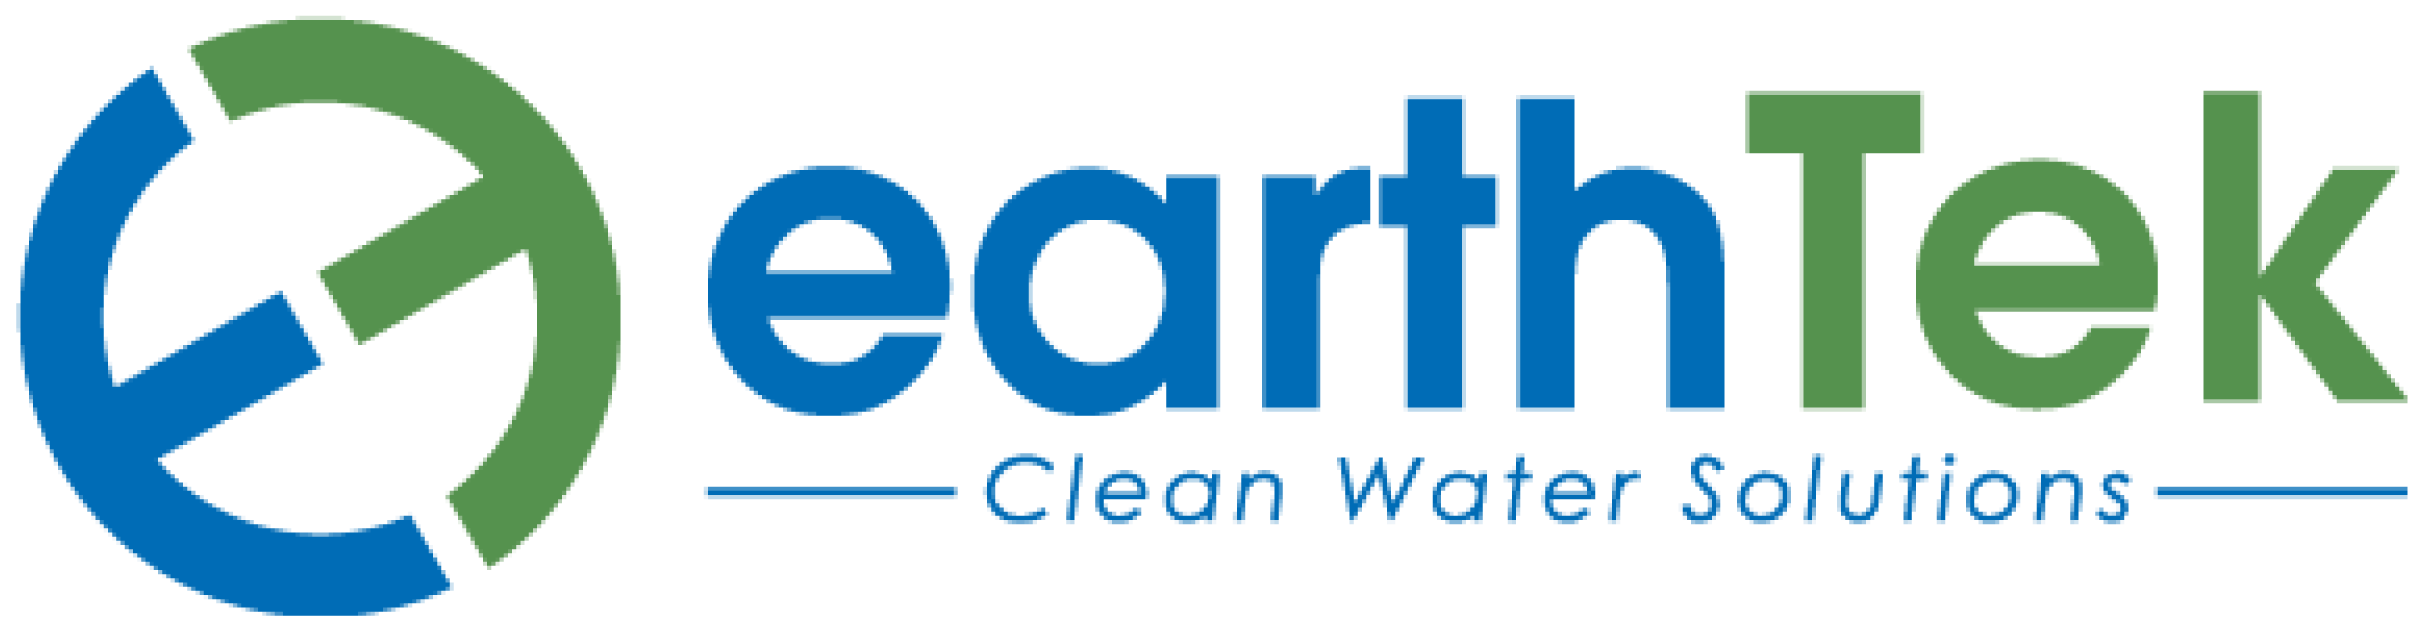 earthtek-logo